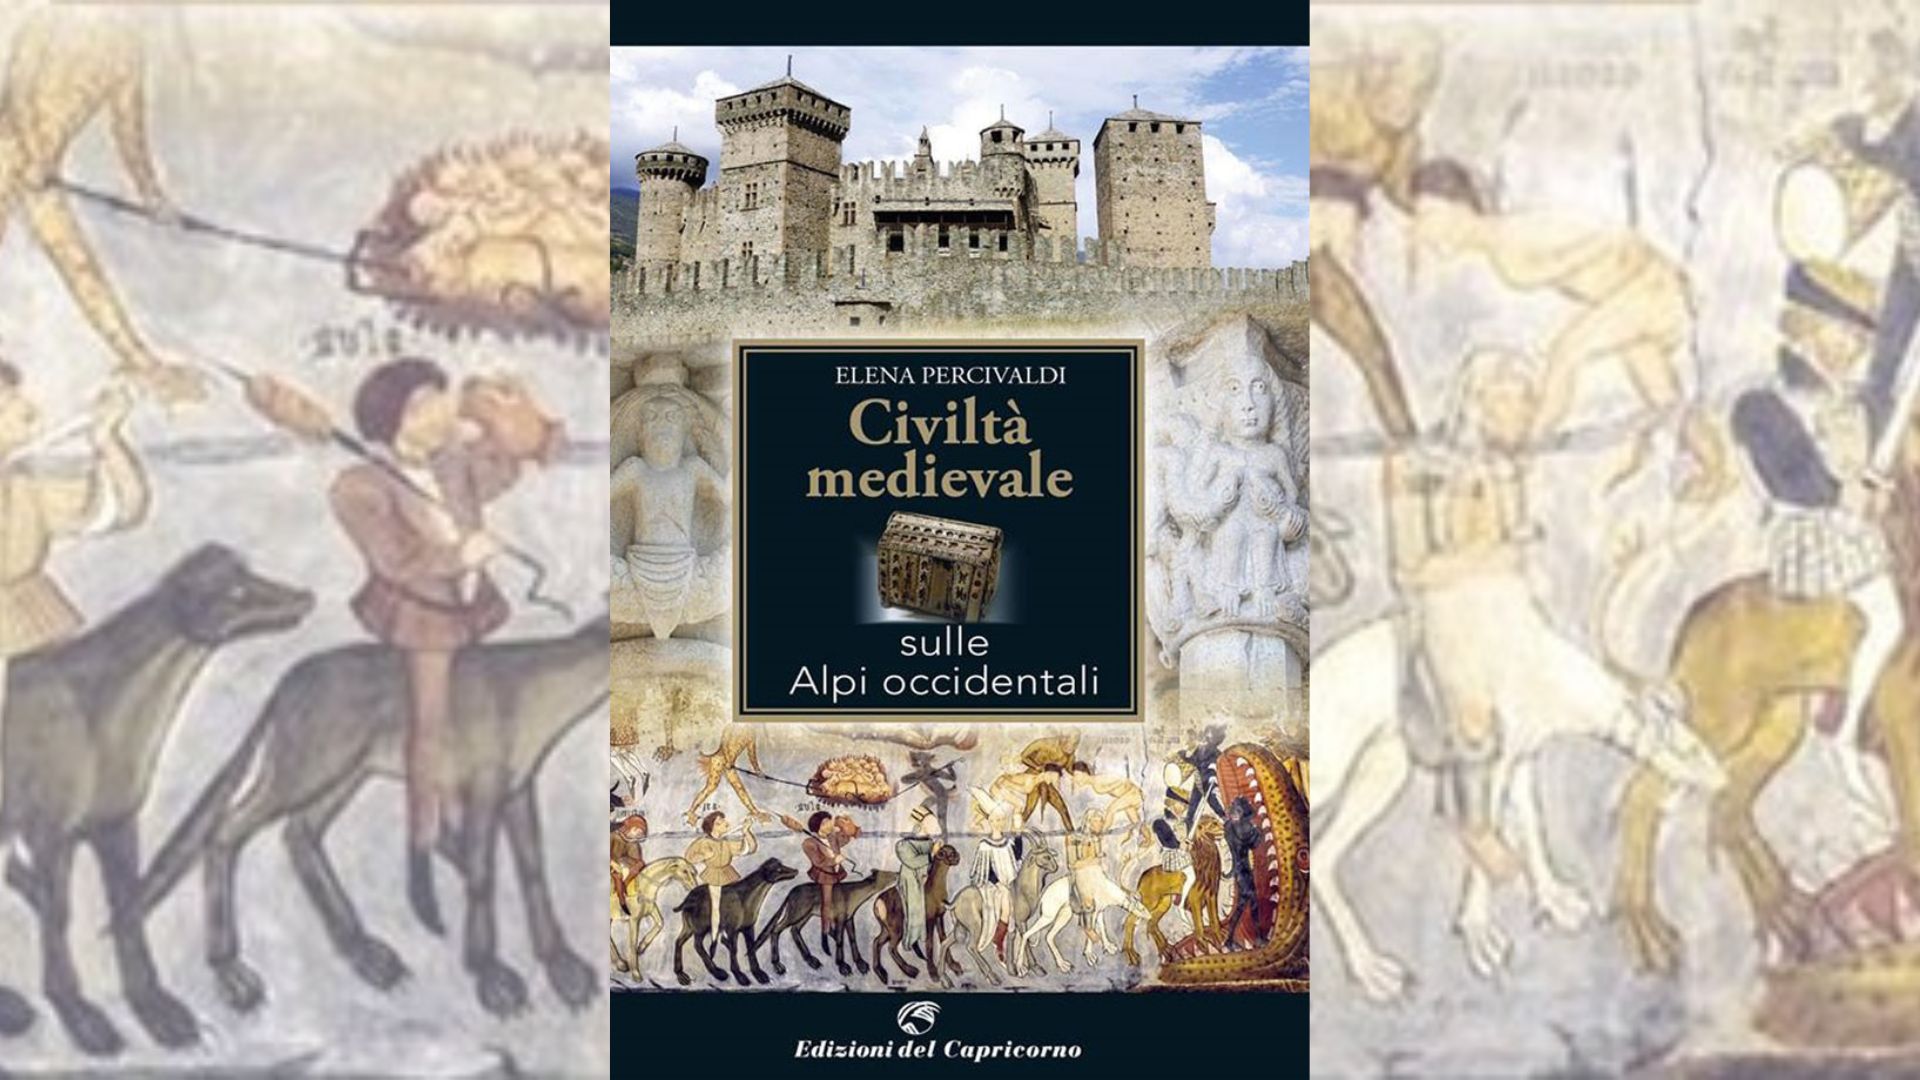 Vai alla pagina Civiltà Medievale sulle Alpi occidentali